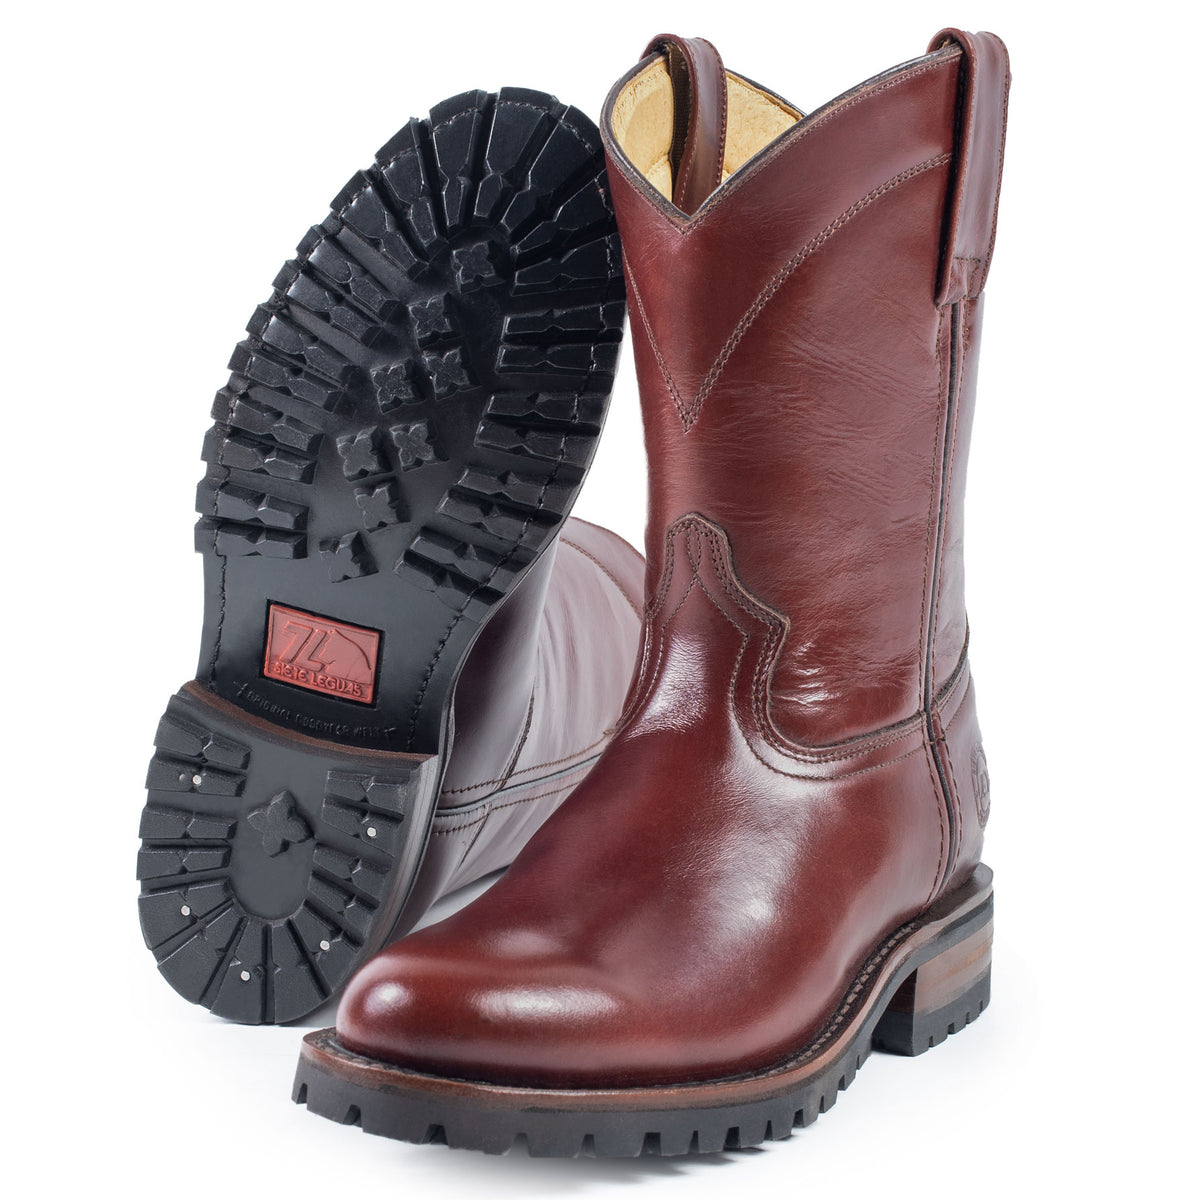 Original Roper Leather Boot 1000-AC